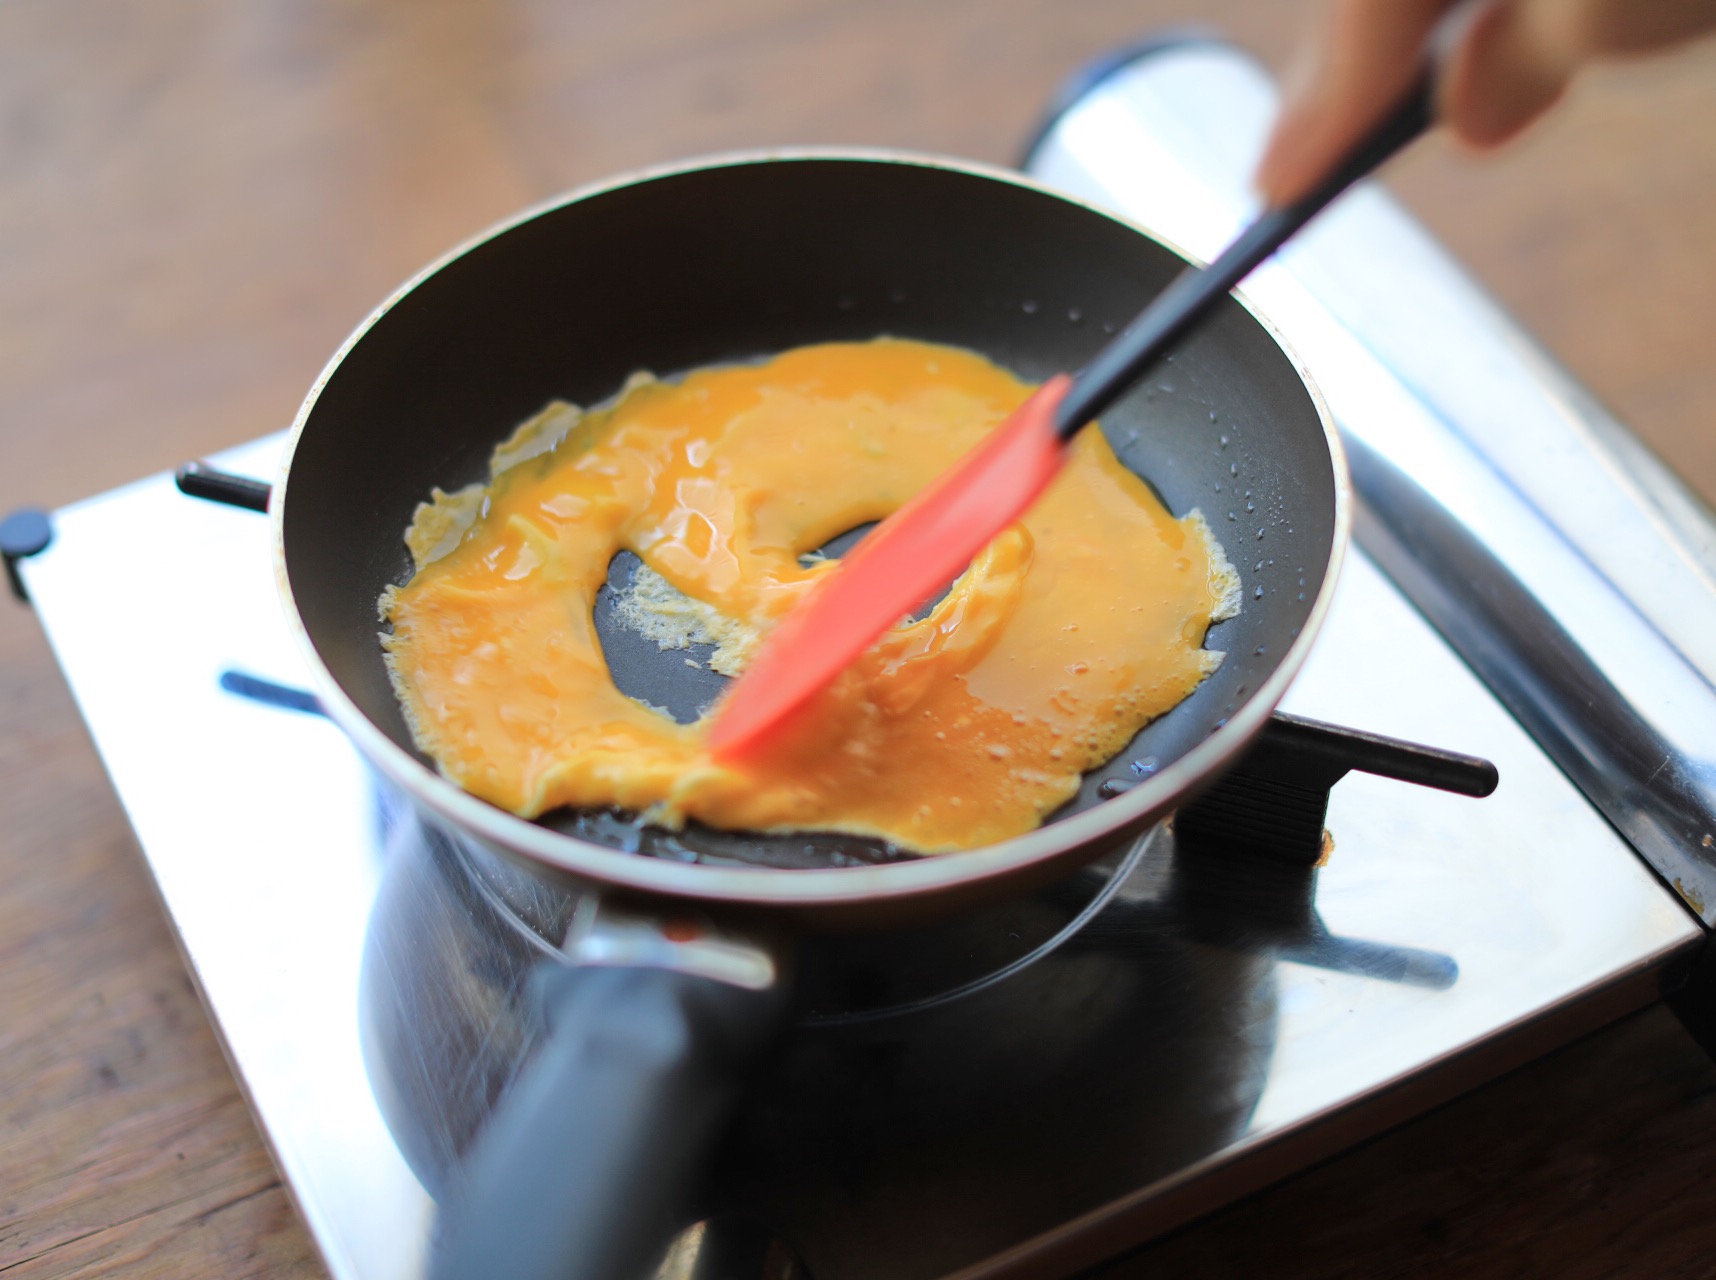 卵１個でカンタンにできる きれいな形のお弁当オムレツの作り方 お昼が楽しみになるお弁当 舛田悠紀子 Yahoo Japan クリエイターズプログラム